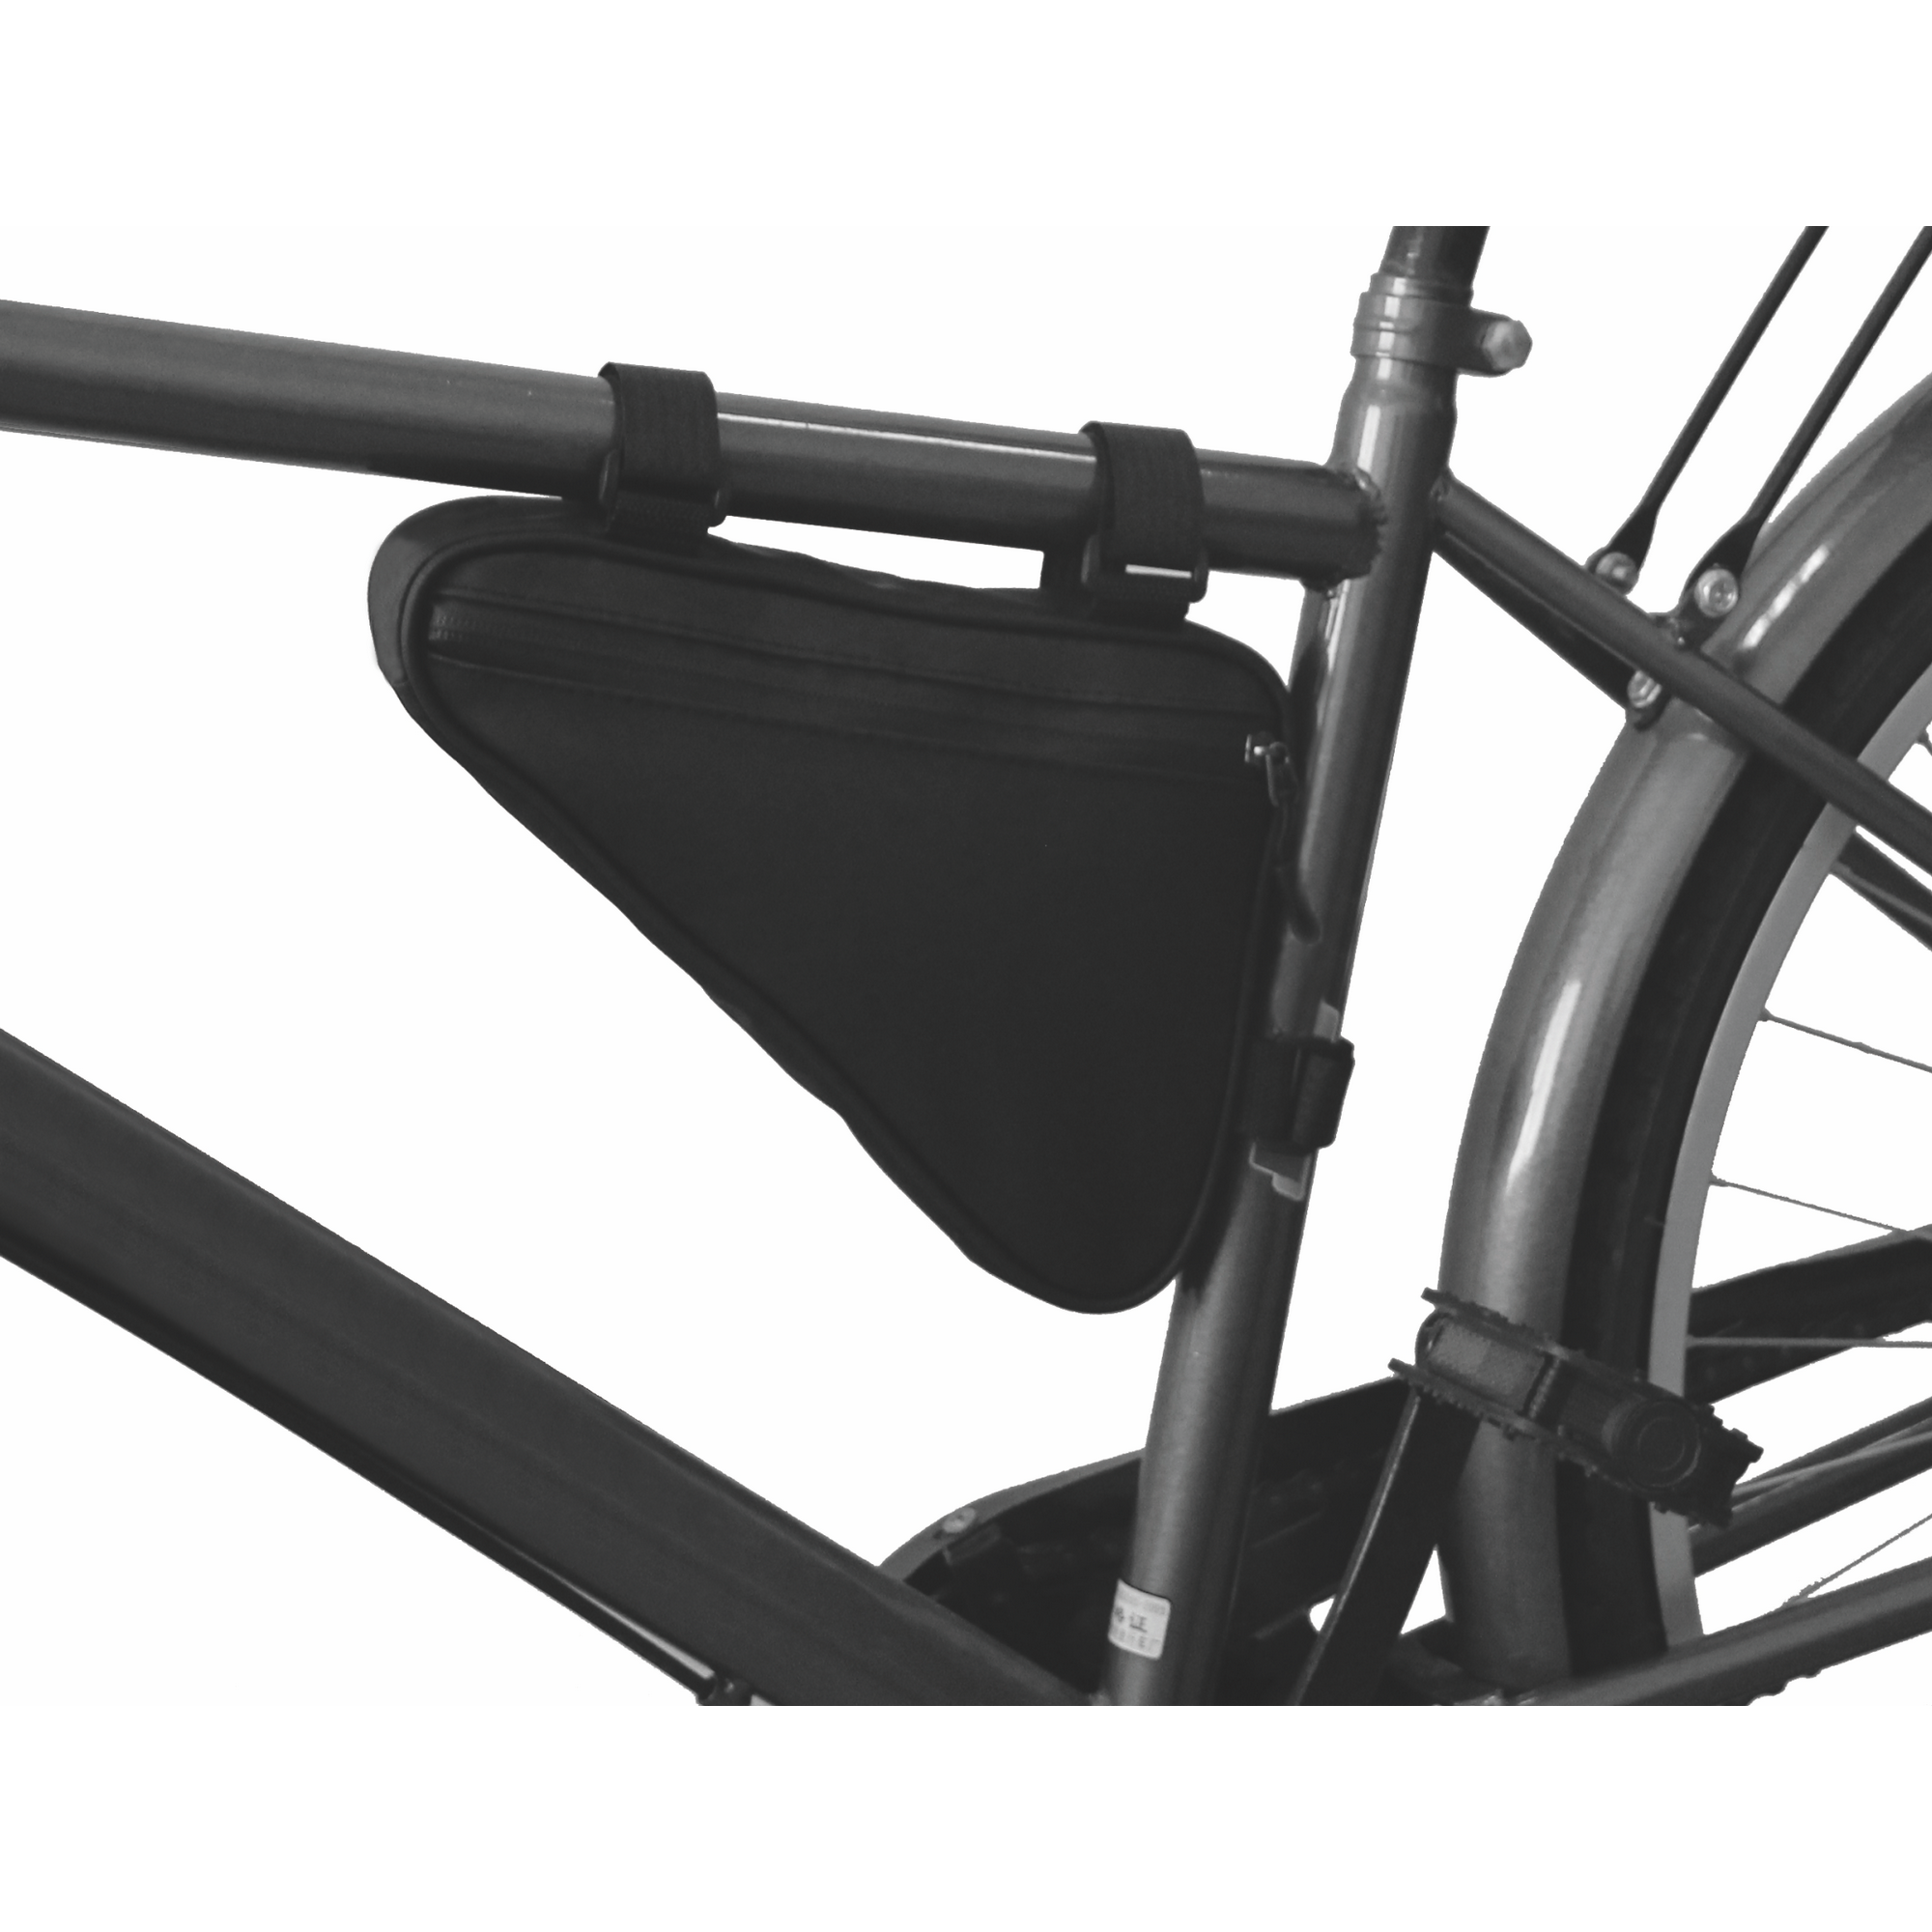 Fahrrad-Rahmentasche 'Triangel' 26 x 22 x 17 cm Polyester schwarz + product picture